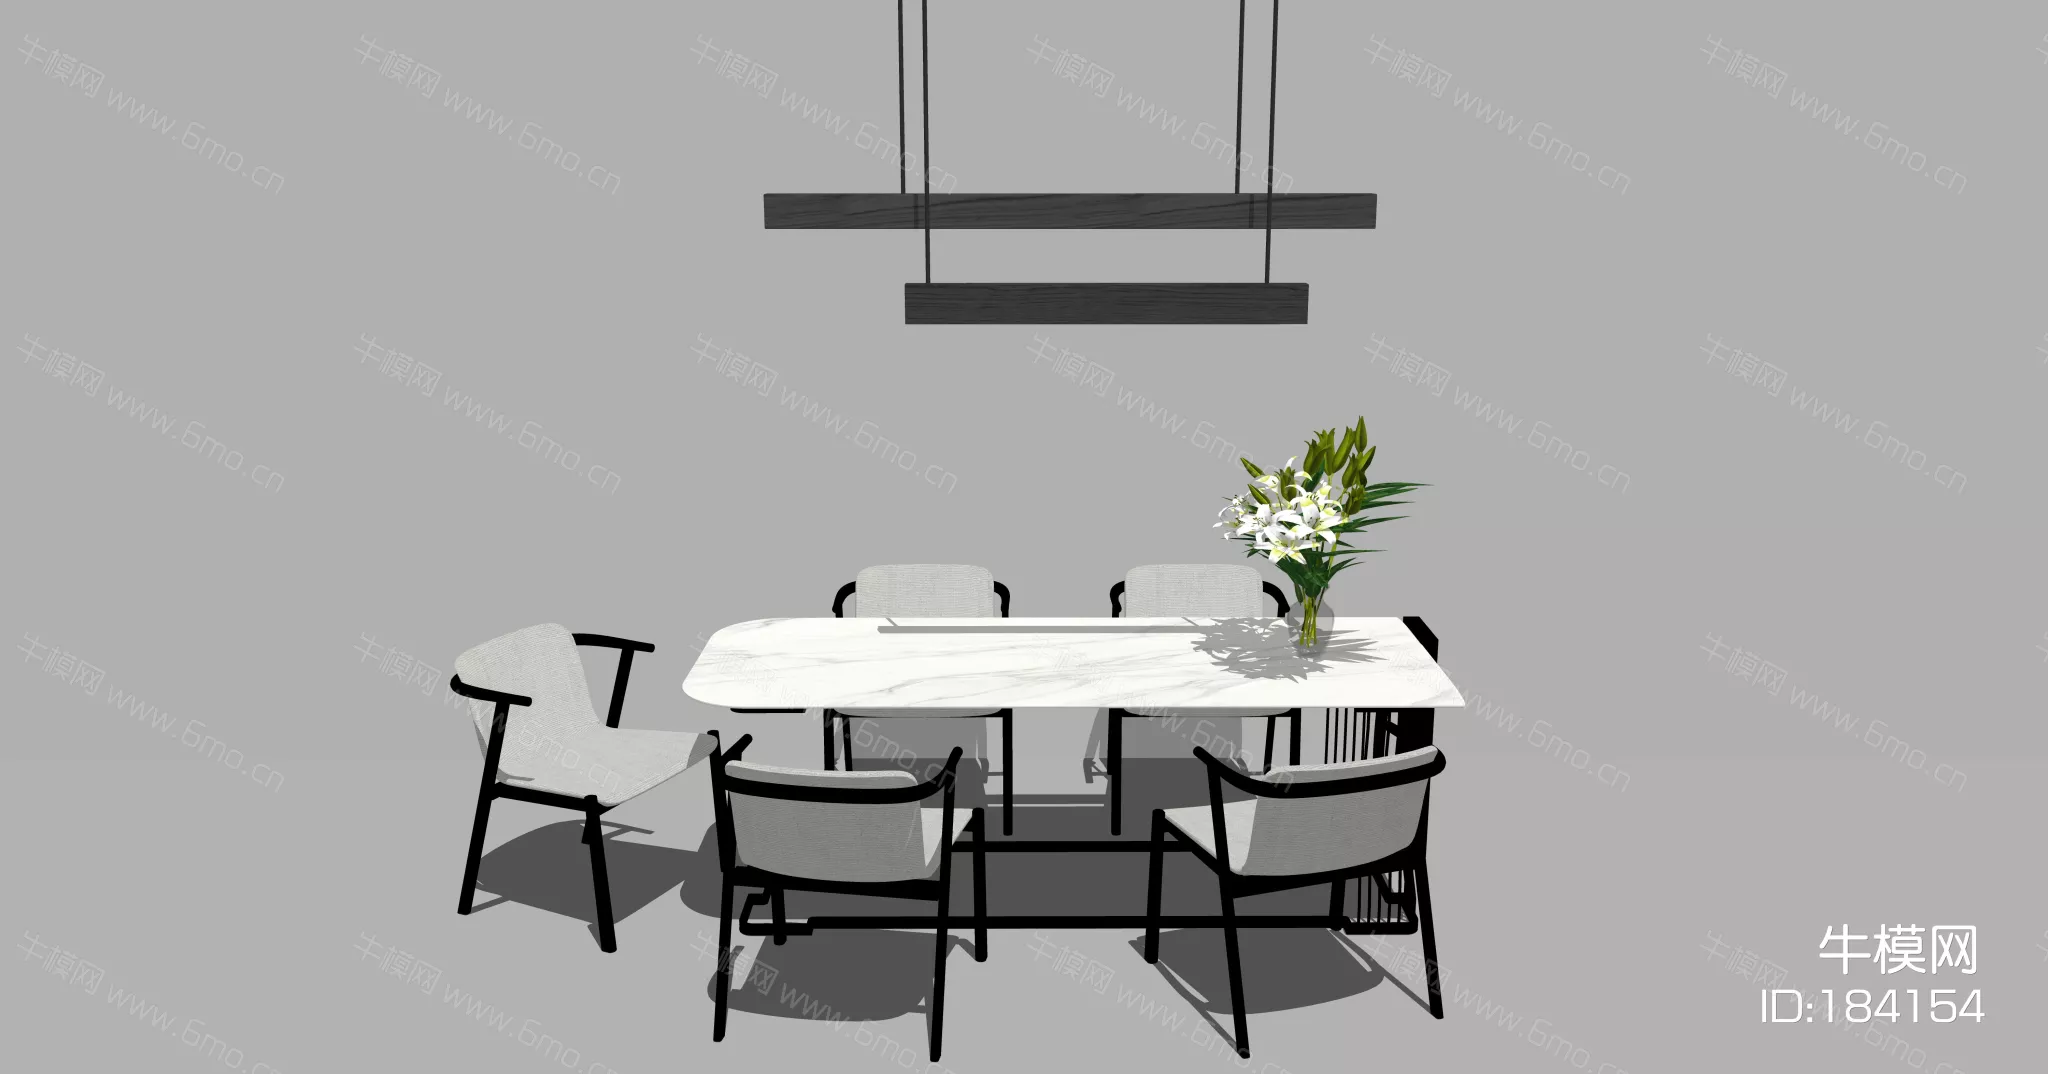 MODERN DINING TABLE SET - SKETCHUP 3D MODEL - ENSCAPE - 184154